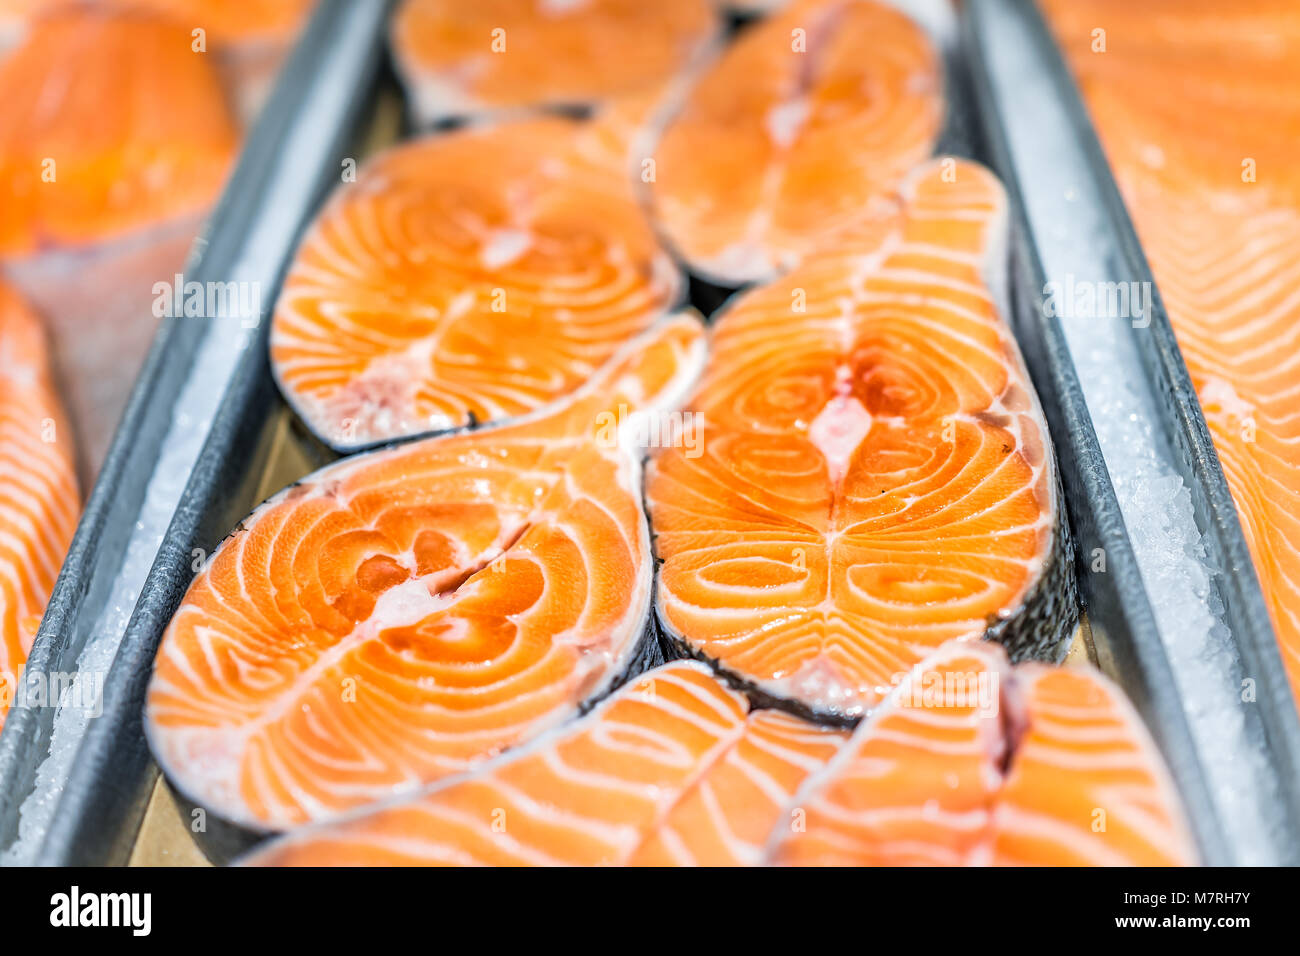 Nahaufnahme der viele frische Auswahl Lachs schneiden Steaks Fisch in Seafood Market shop Anzeige Fach orange große Farm Fett angehoben marmoriert Stockfoto